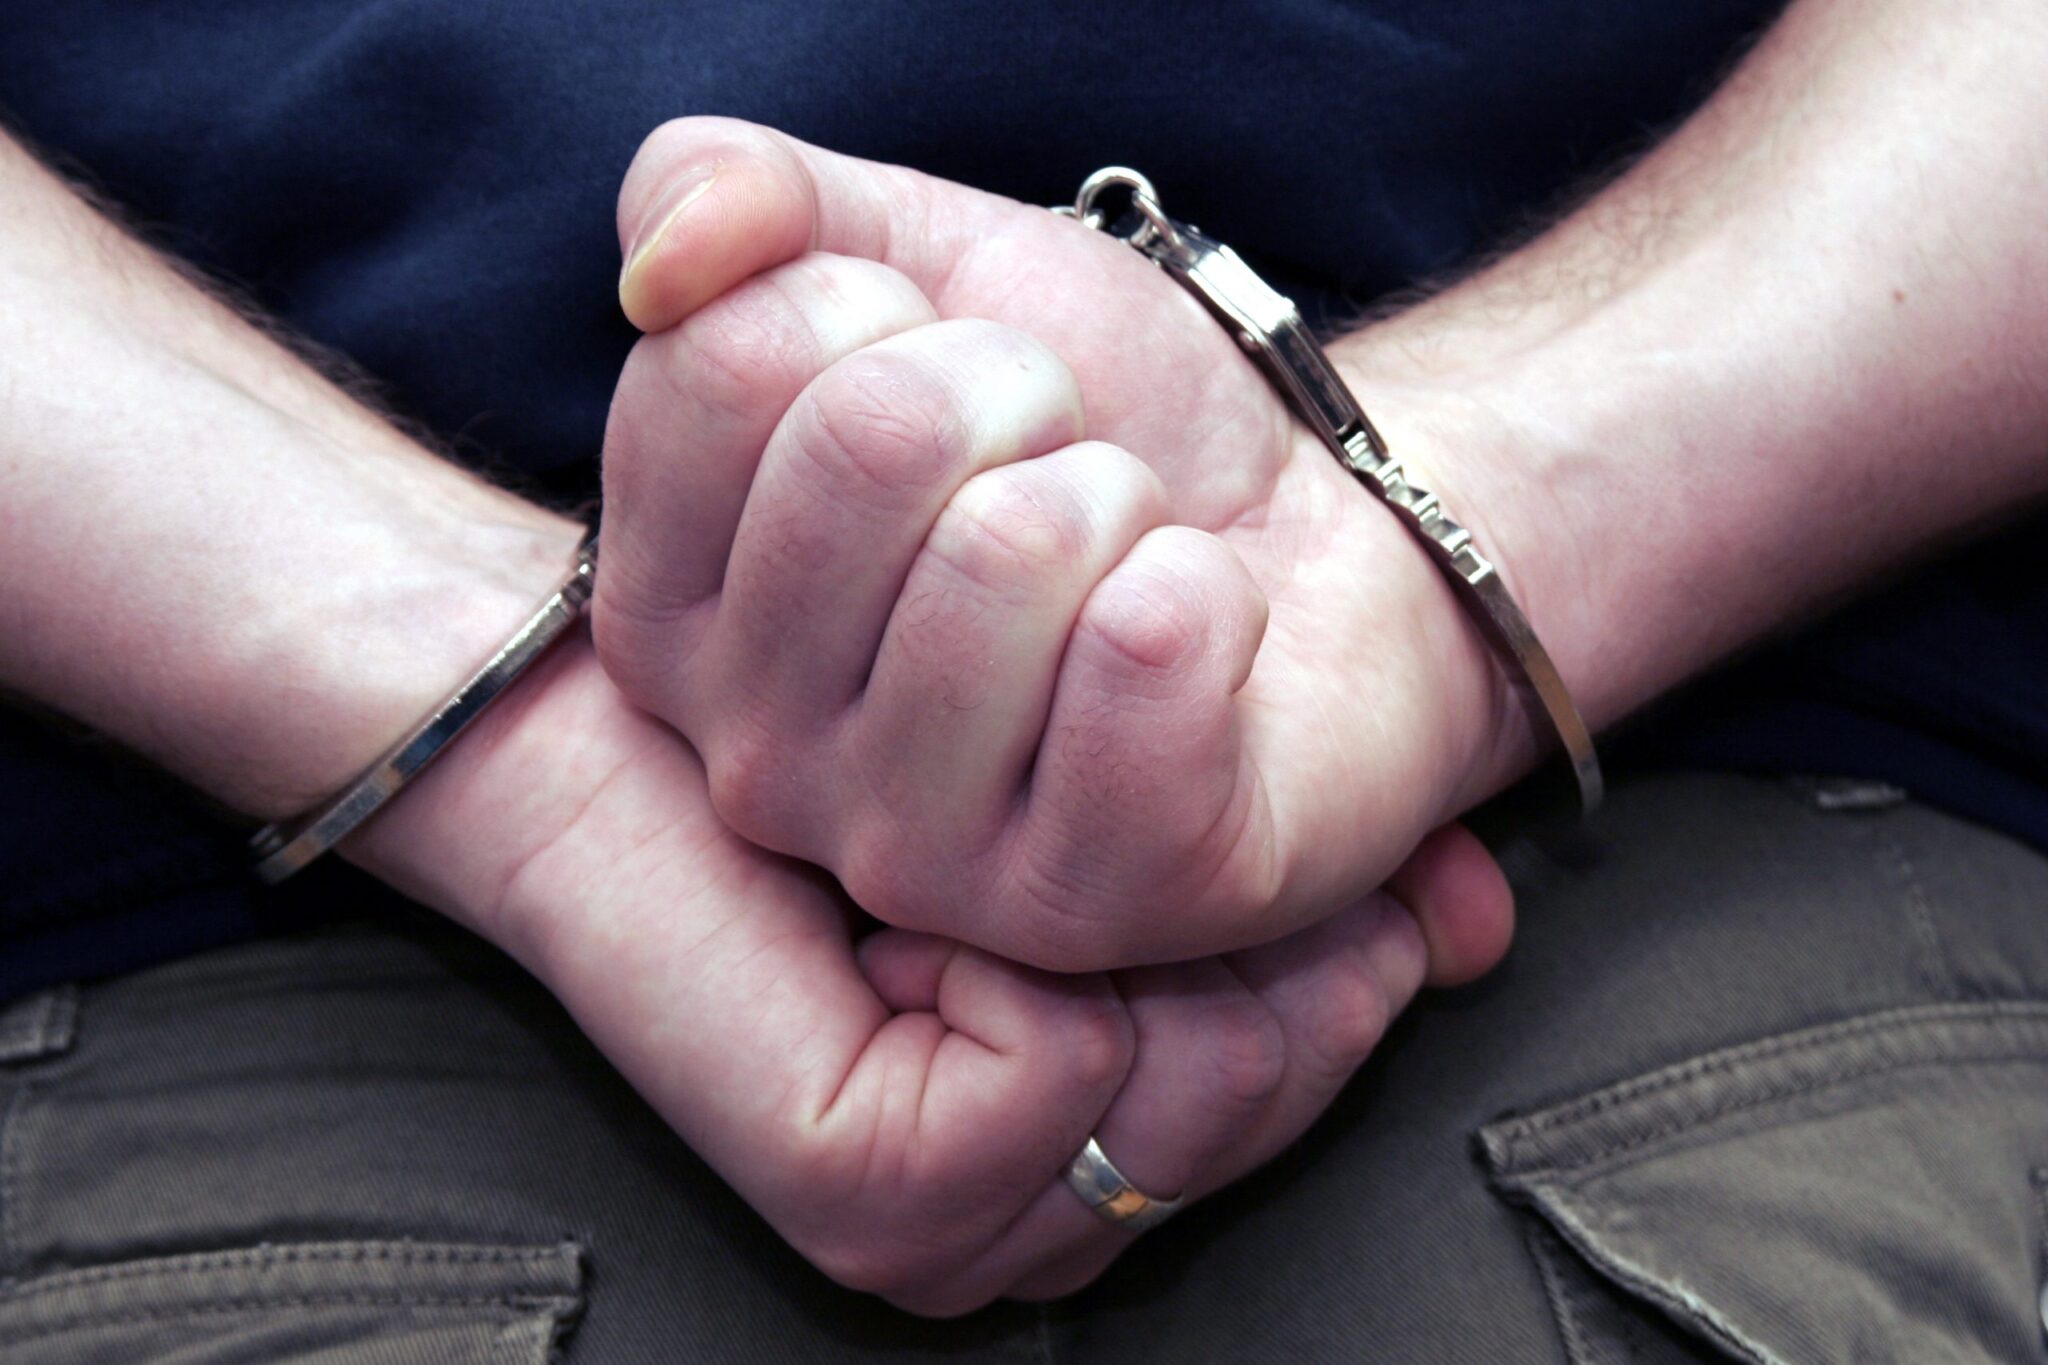 Person in handcuffs